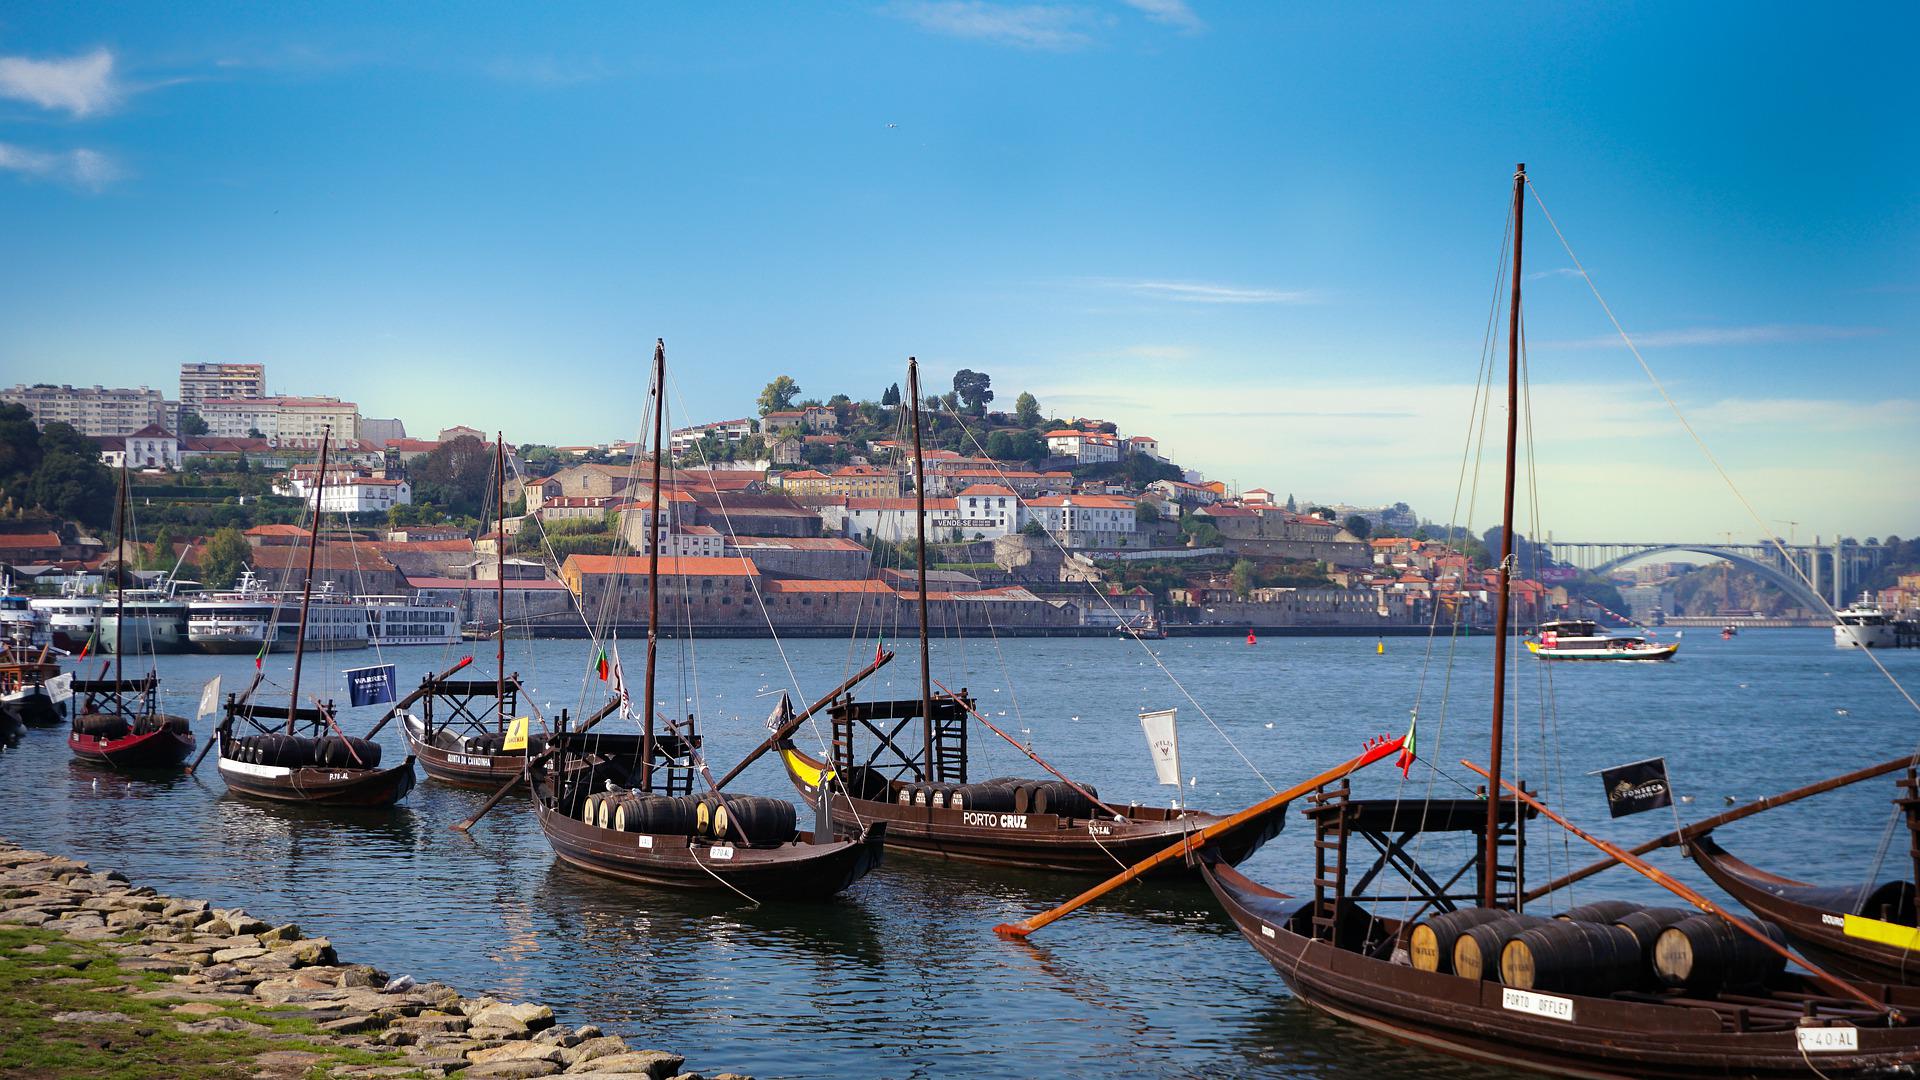 Rio Douro_Imagem de Marcicléo Oliveira Marcicléo por Pixabay